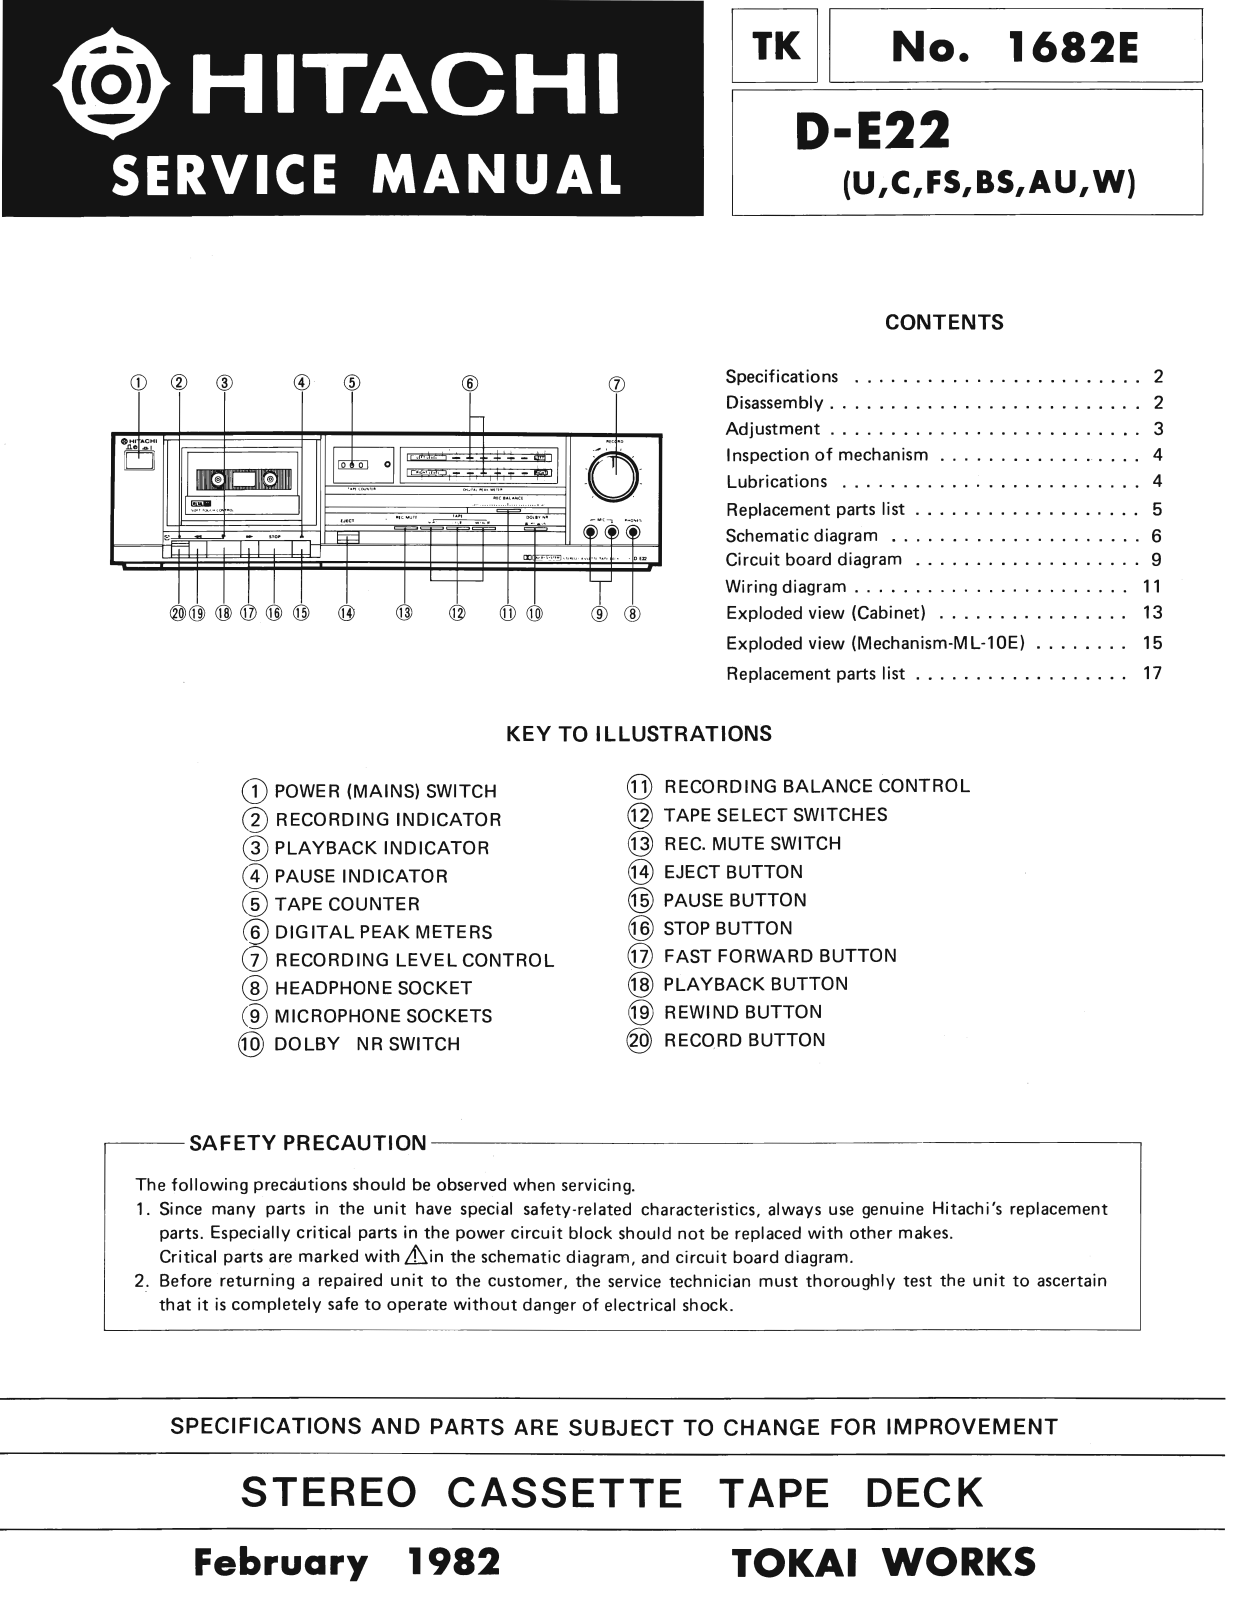 Hitachi DE-22 Service Manual